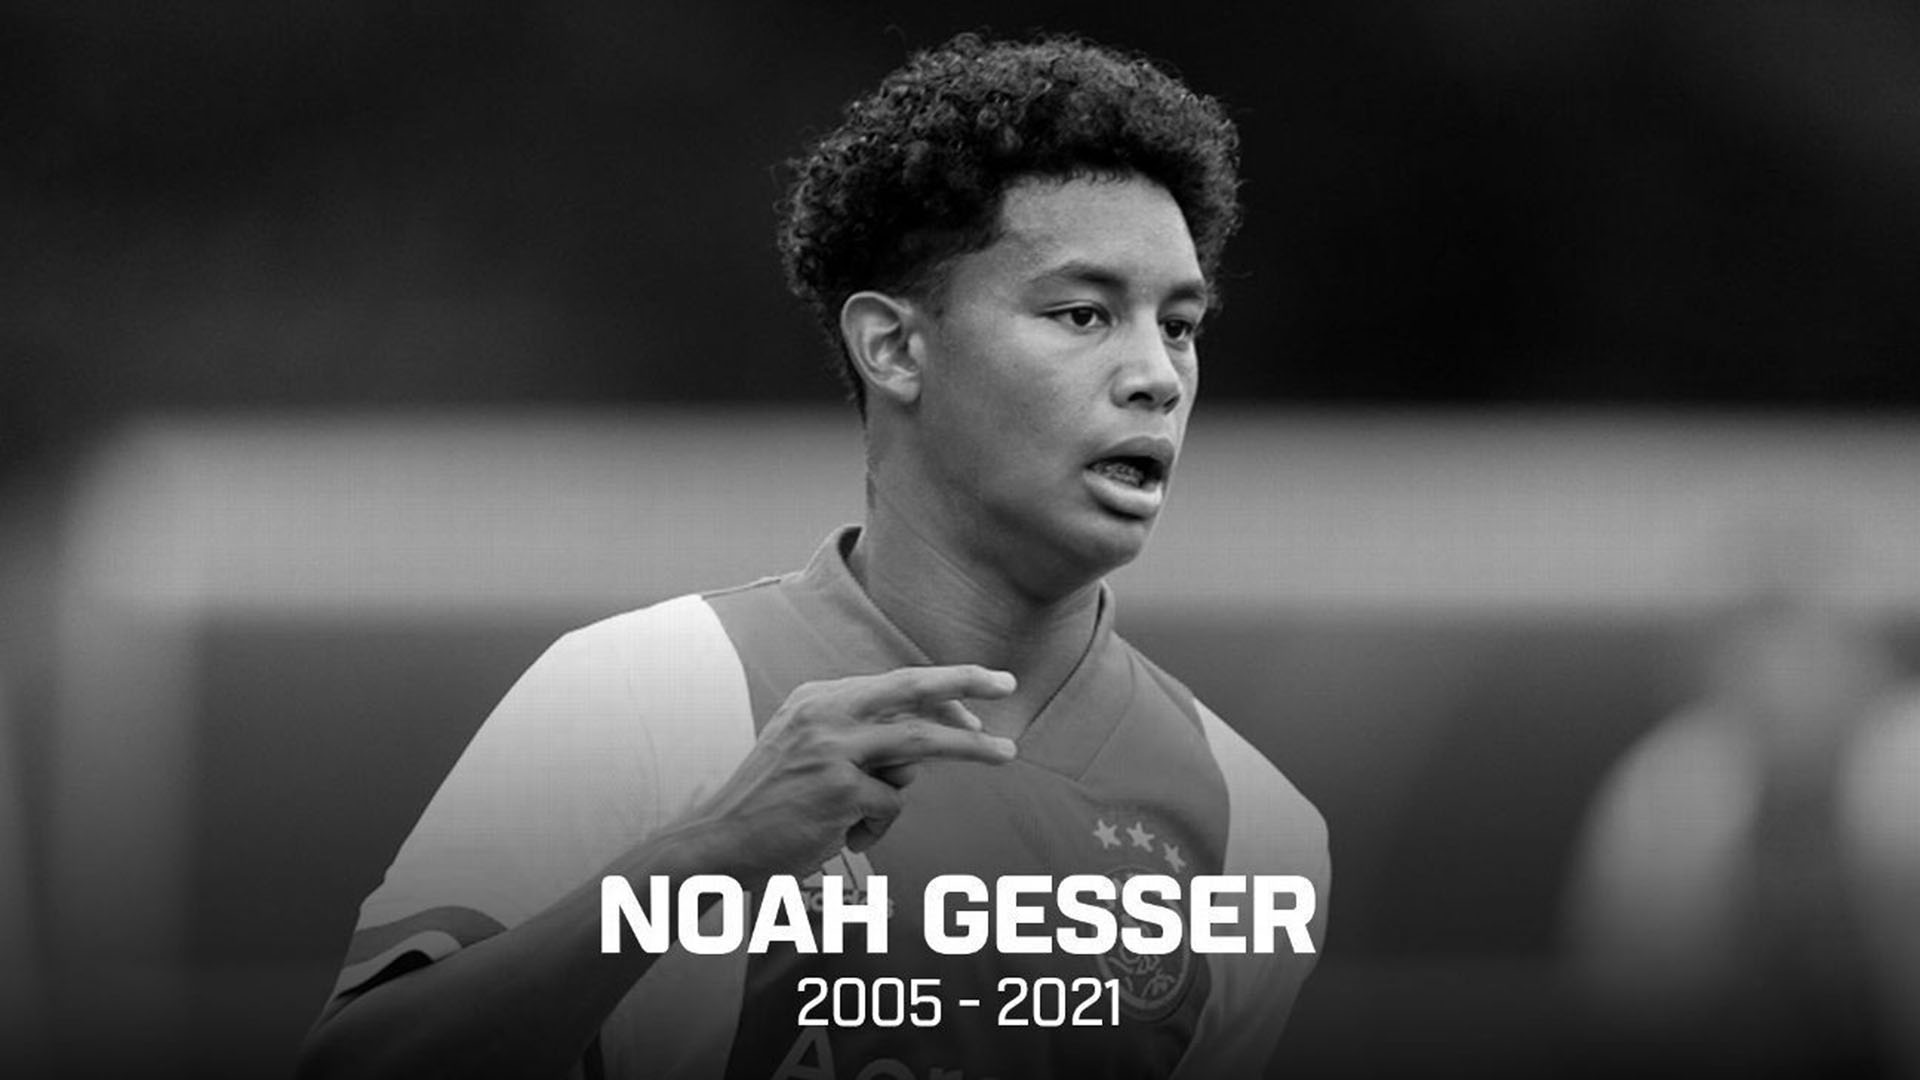 Noah Gesser, promesa del Ajax, falleció a los 16 años en un accidente automovilístico.